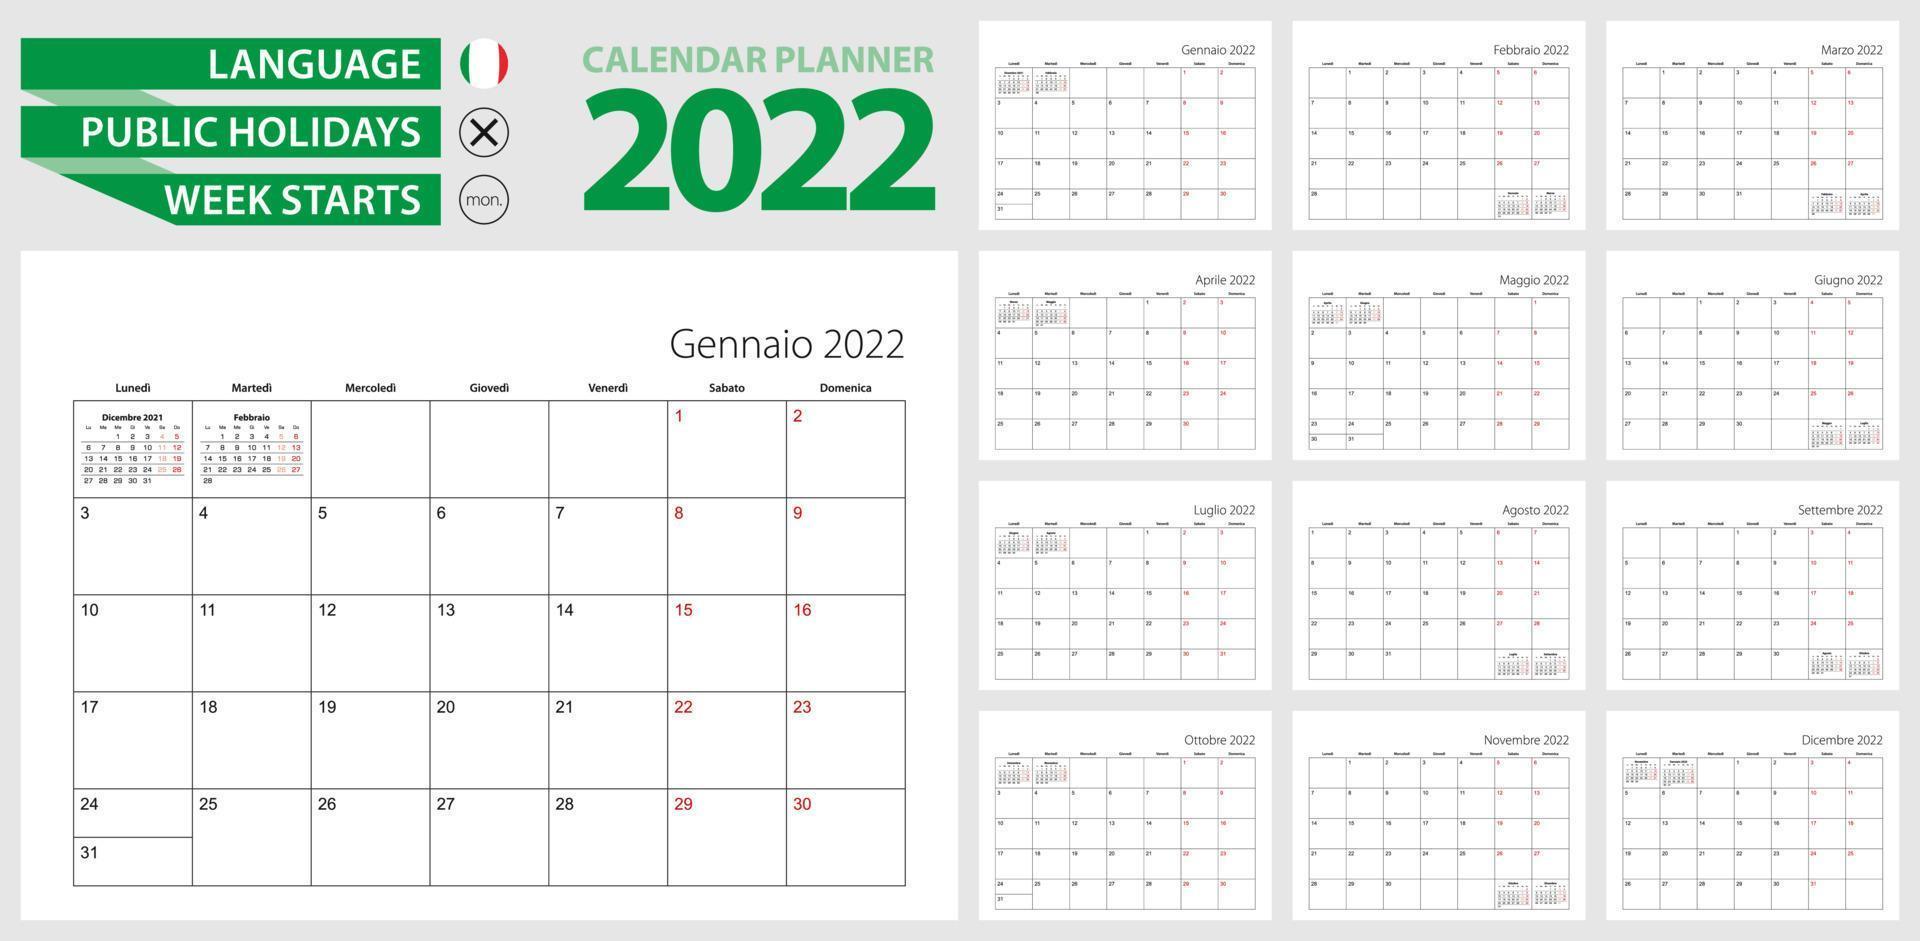 planificador de calendario italiano para 2022. idioma italiano, la semana comienza en lunes. plantilla de calendario vectorial para italia, suiza, san marino y otros. vector